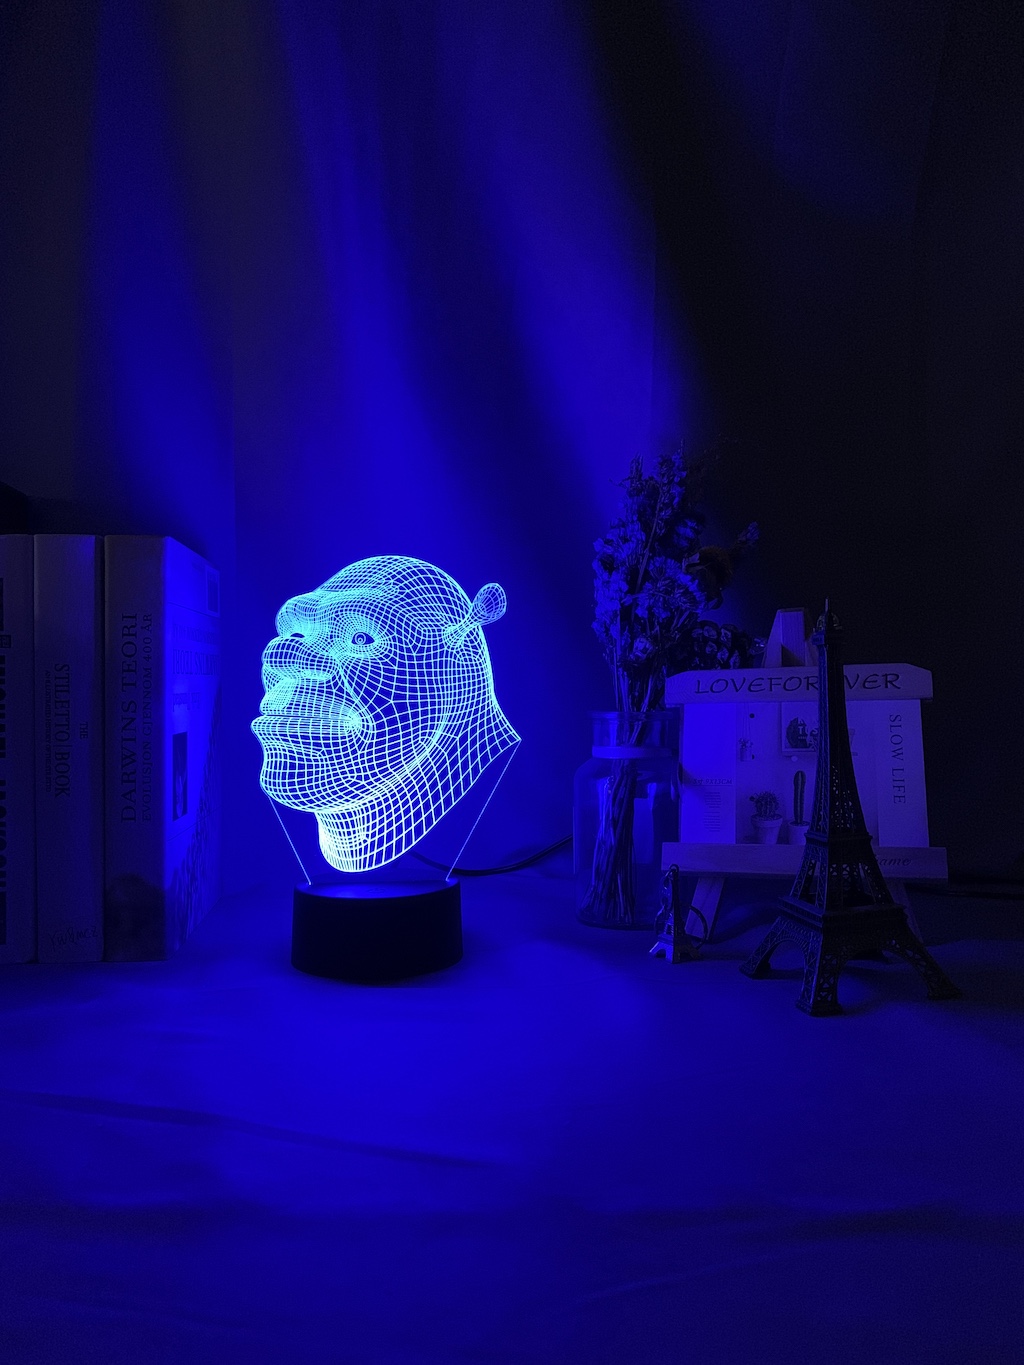 Led Night Light Shrek Head Hologram 3d Illusion Lamp for Kids Child Bedroom Decor Nightlight Usb Battery Powered Table Lamp Gift